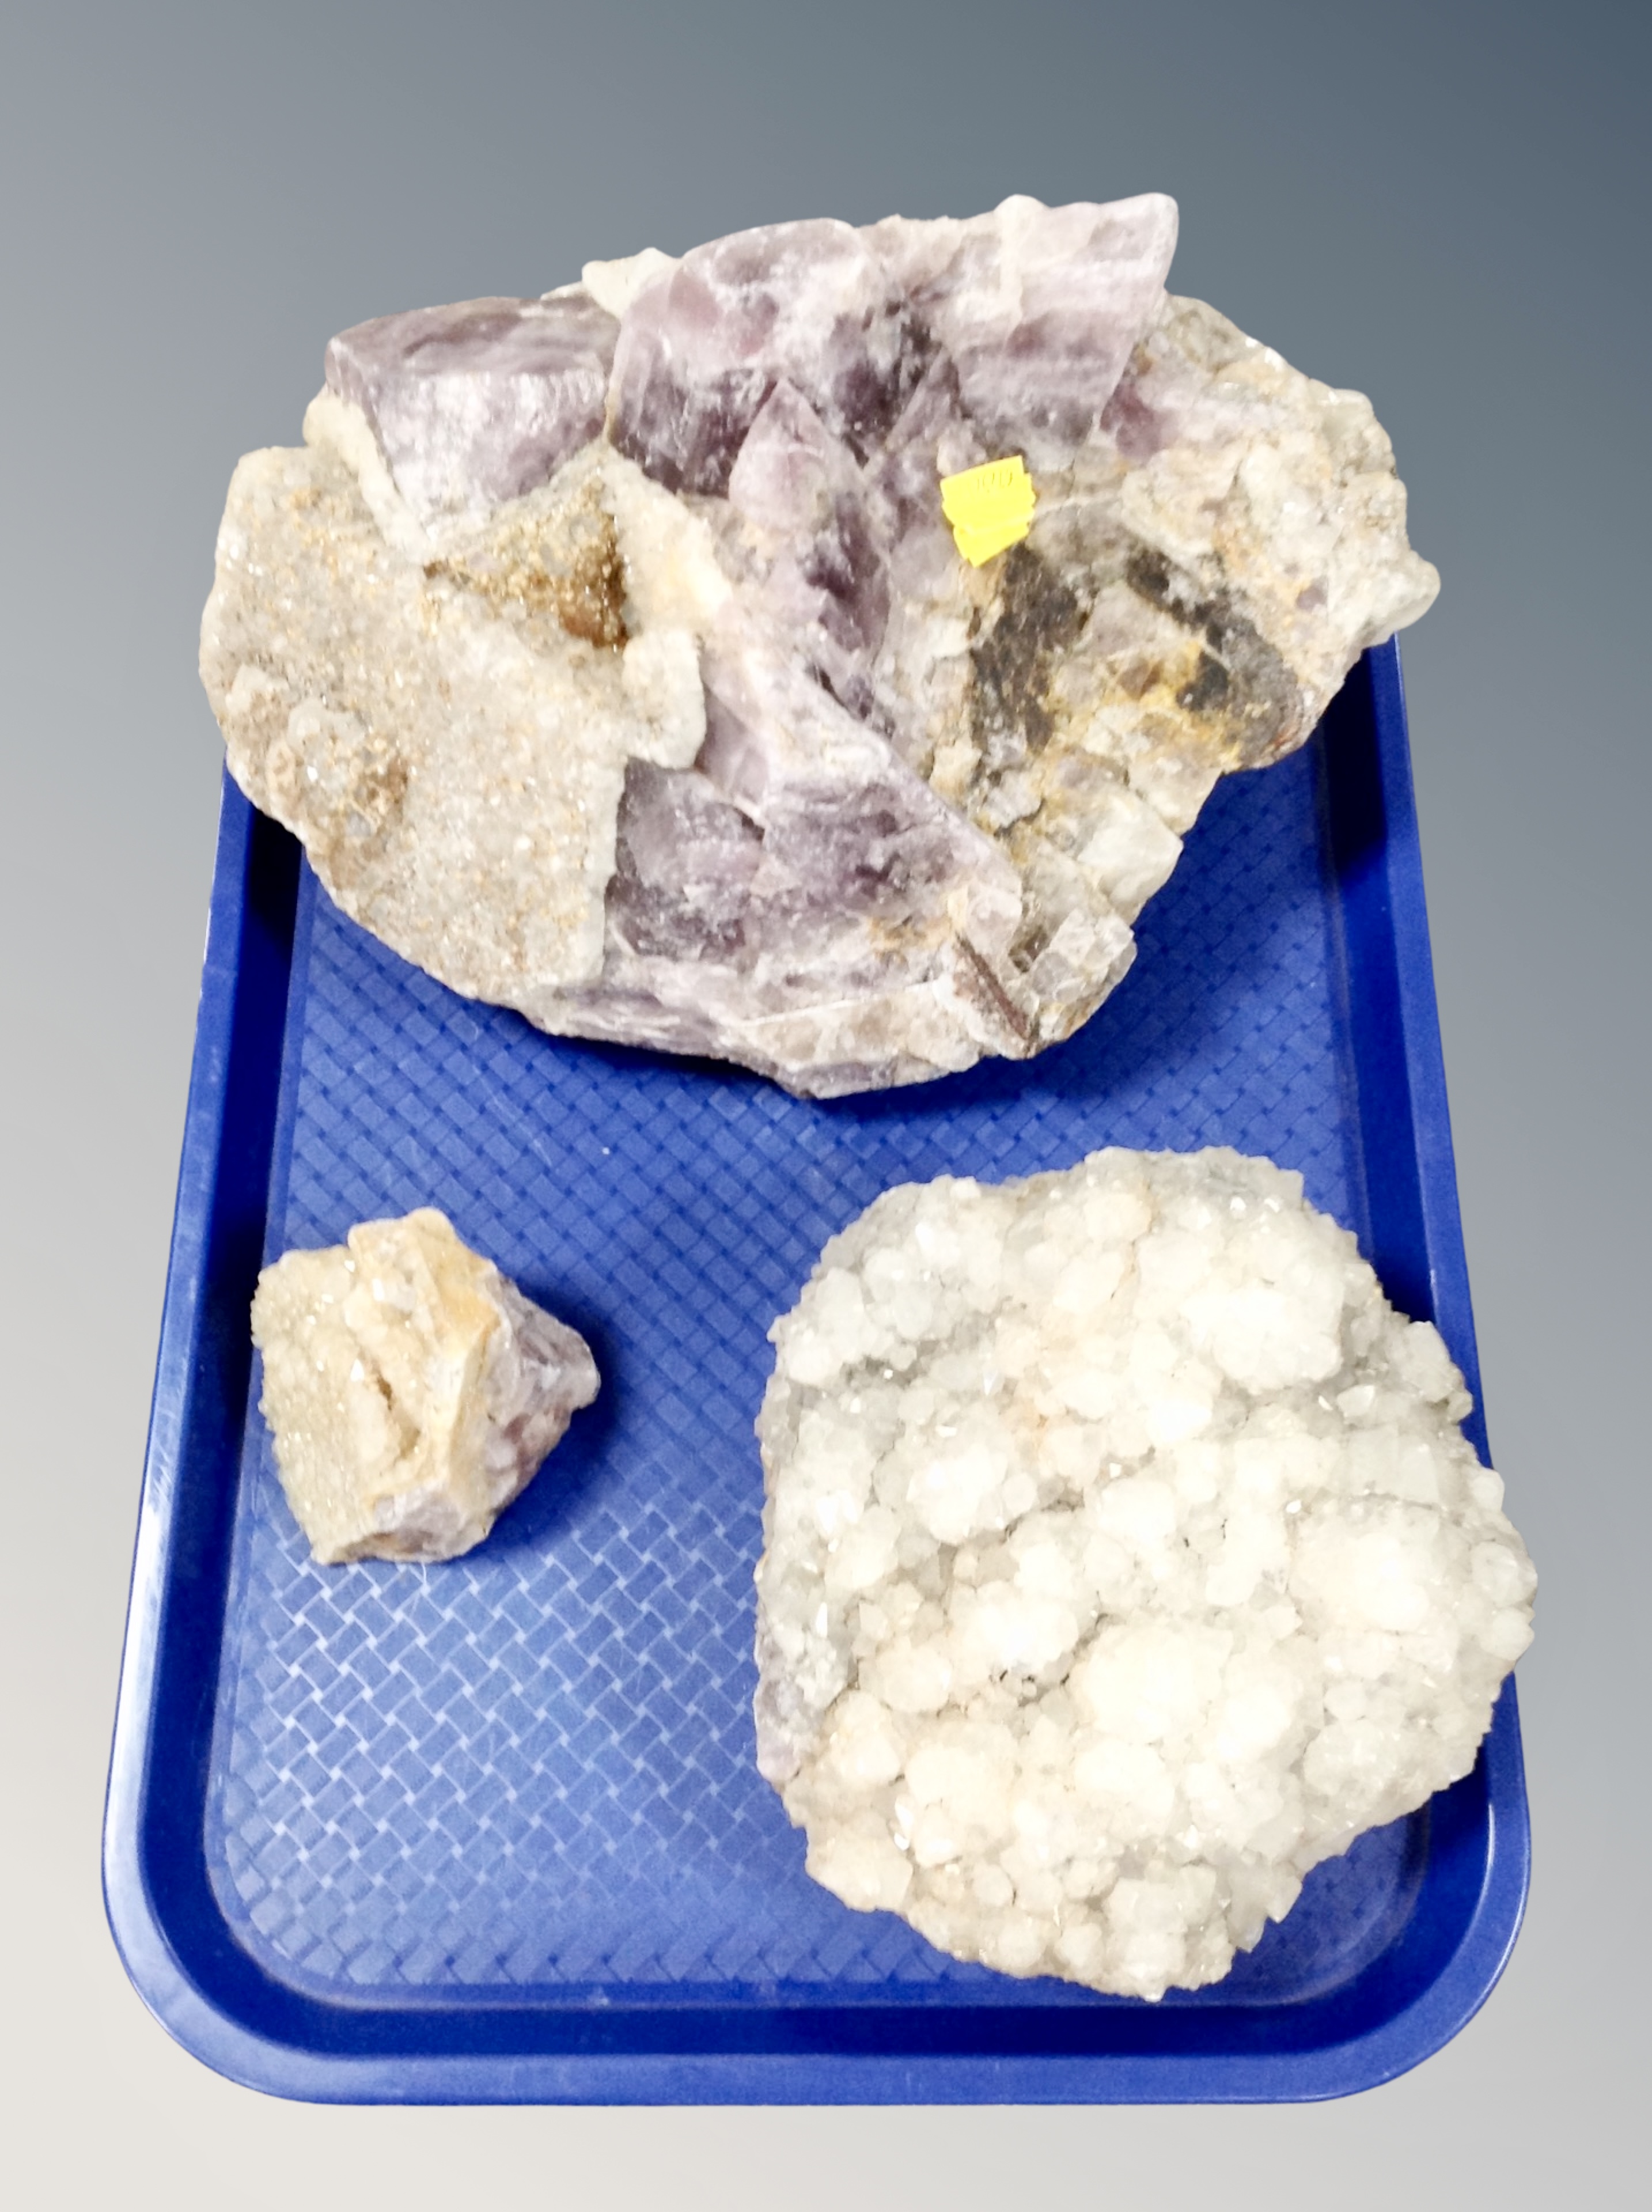 Three quartz rock samples